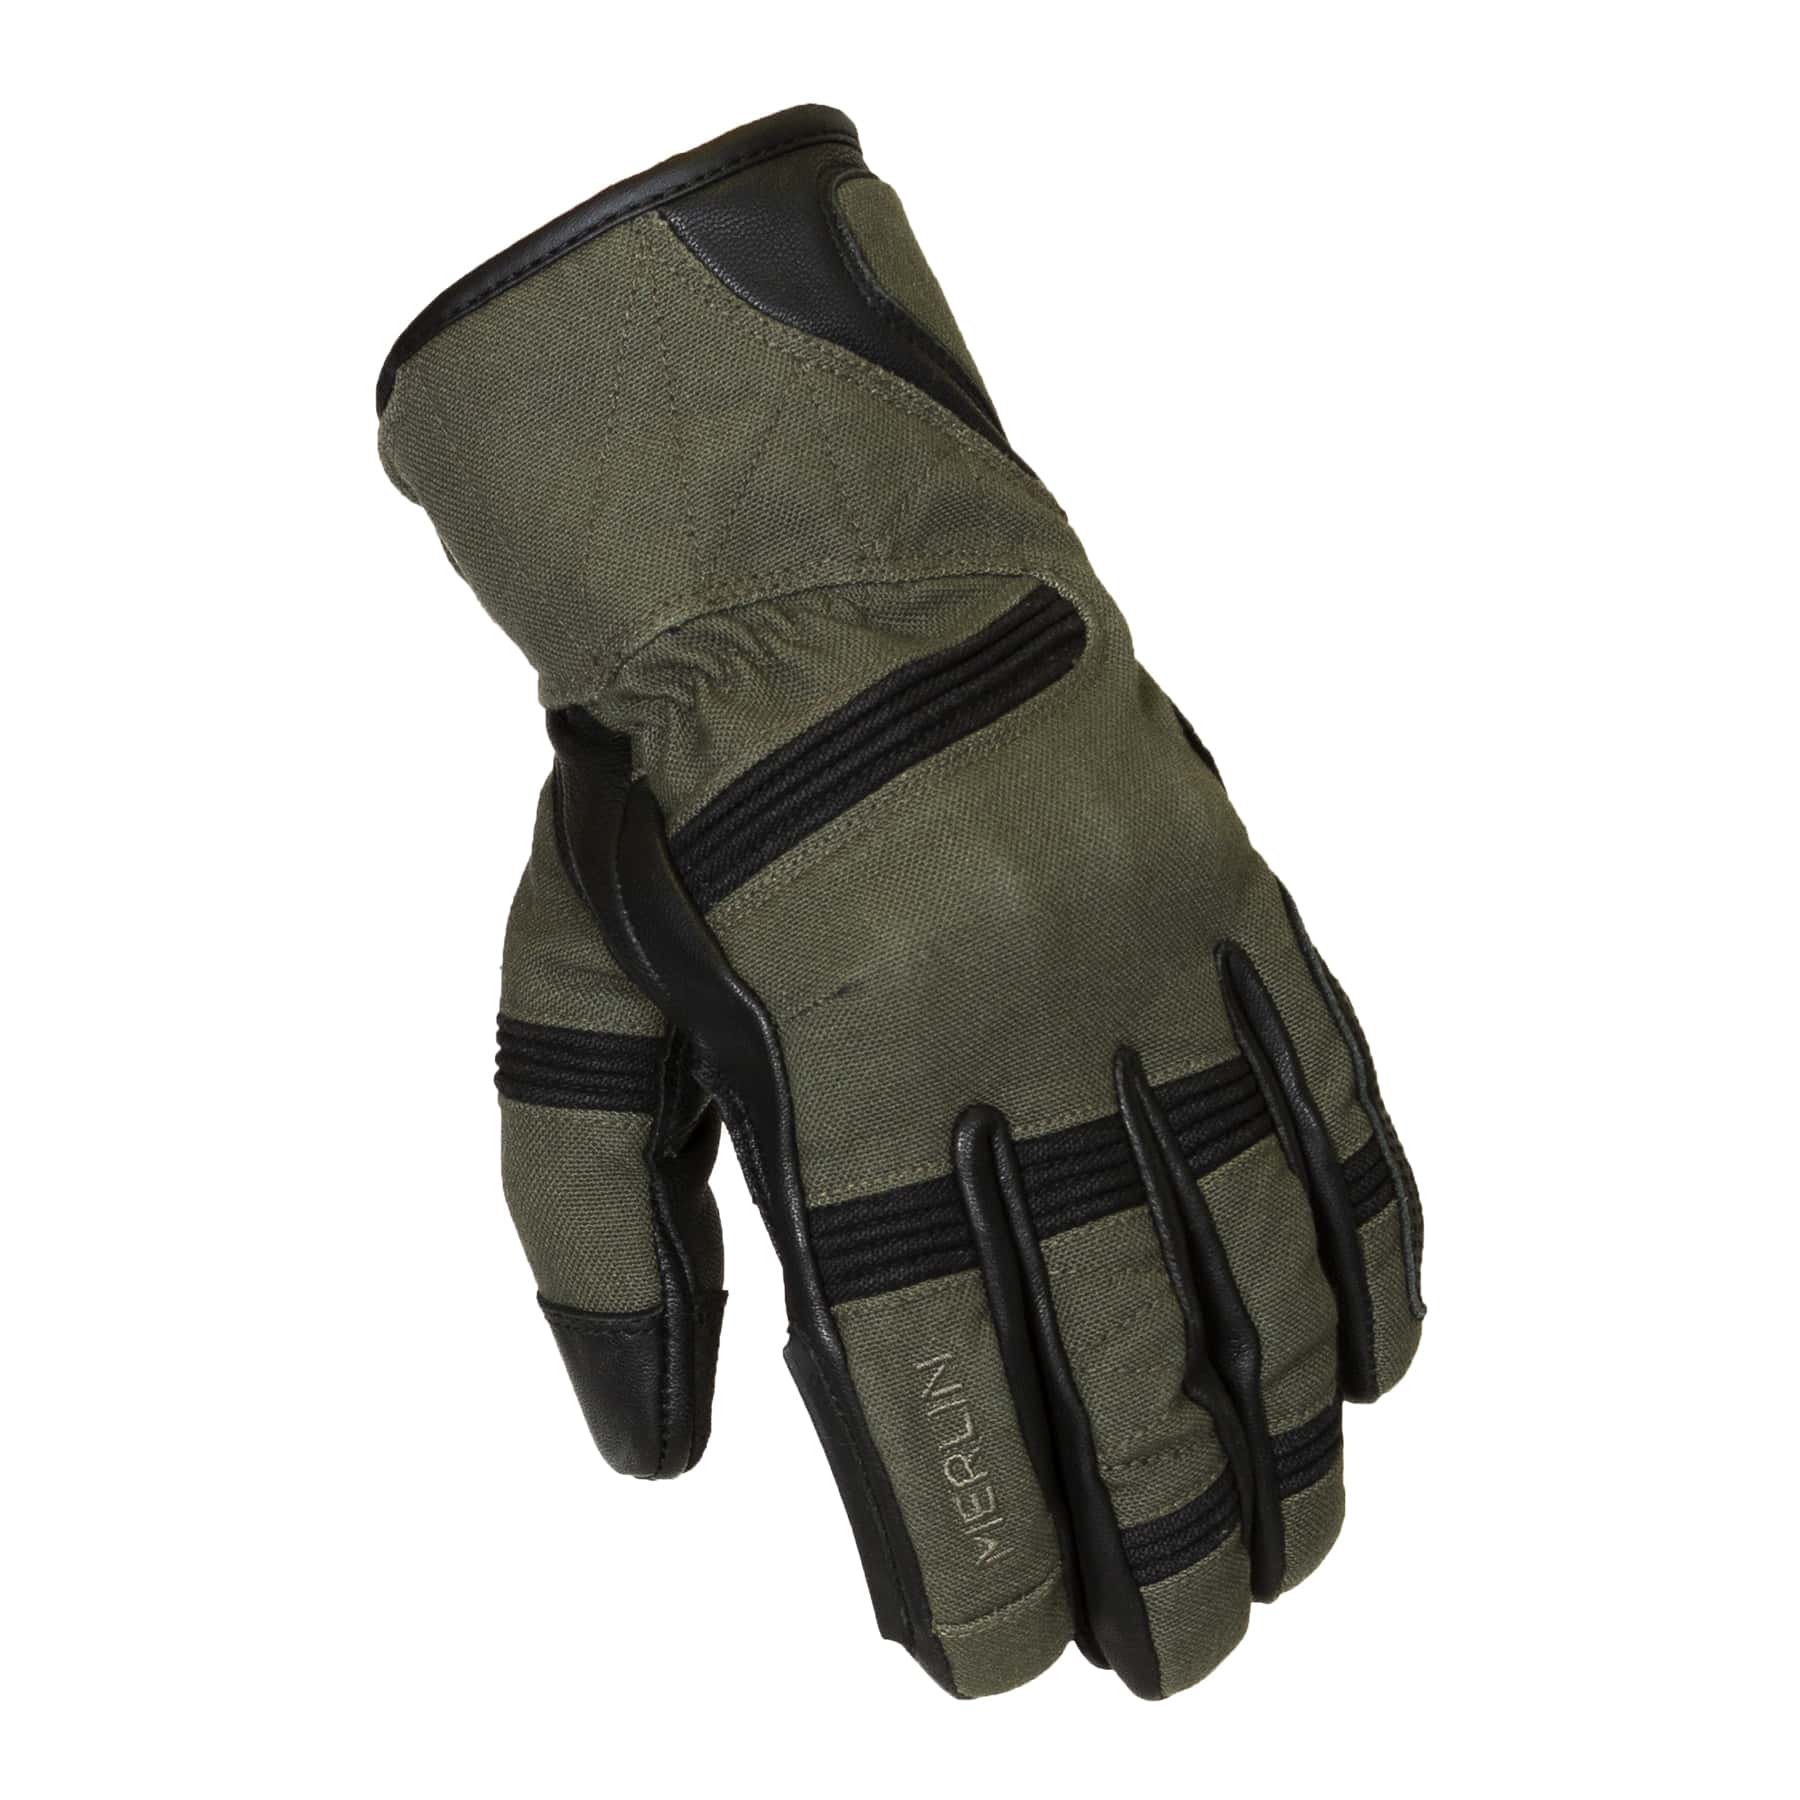 Merlin Mahala Waterproof Explorer motorcycle gloves in black/olive